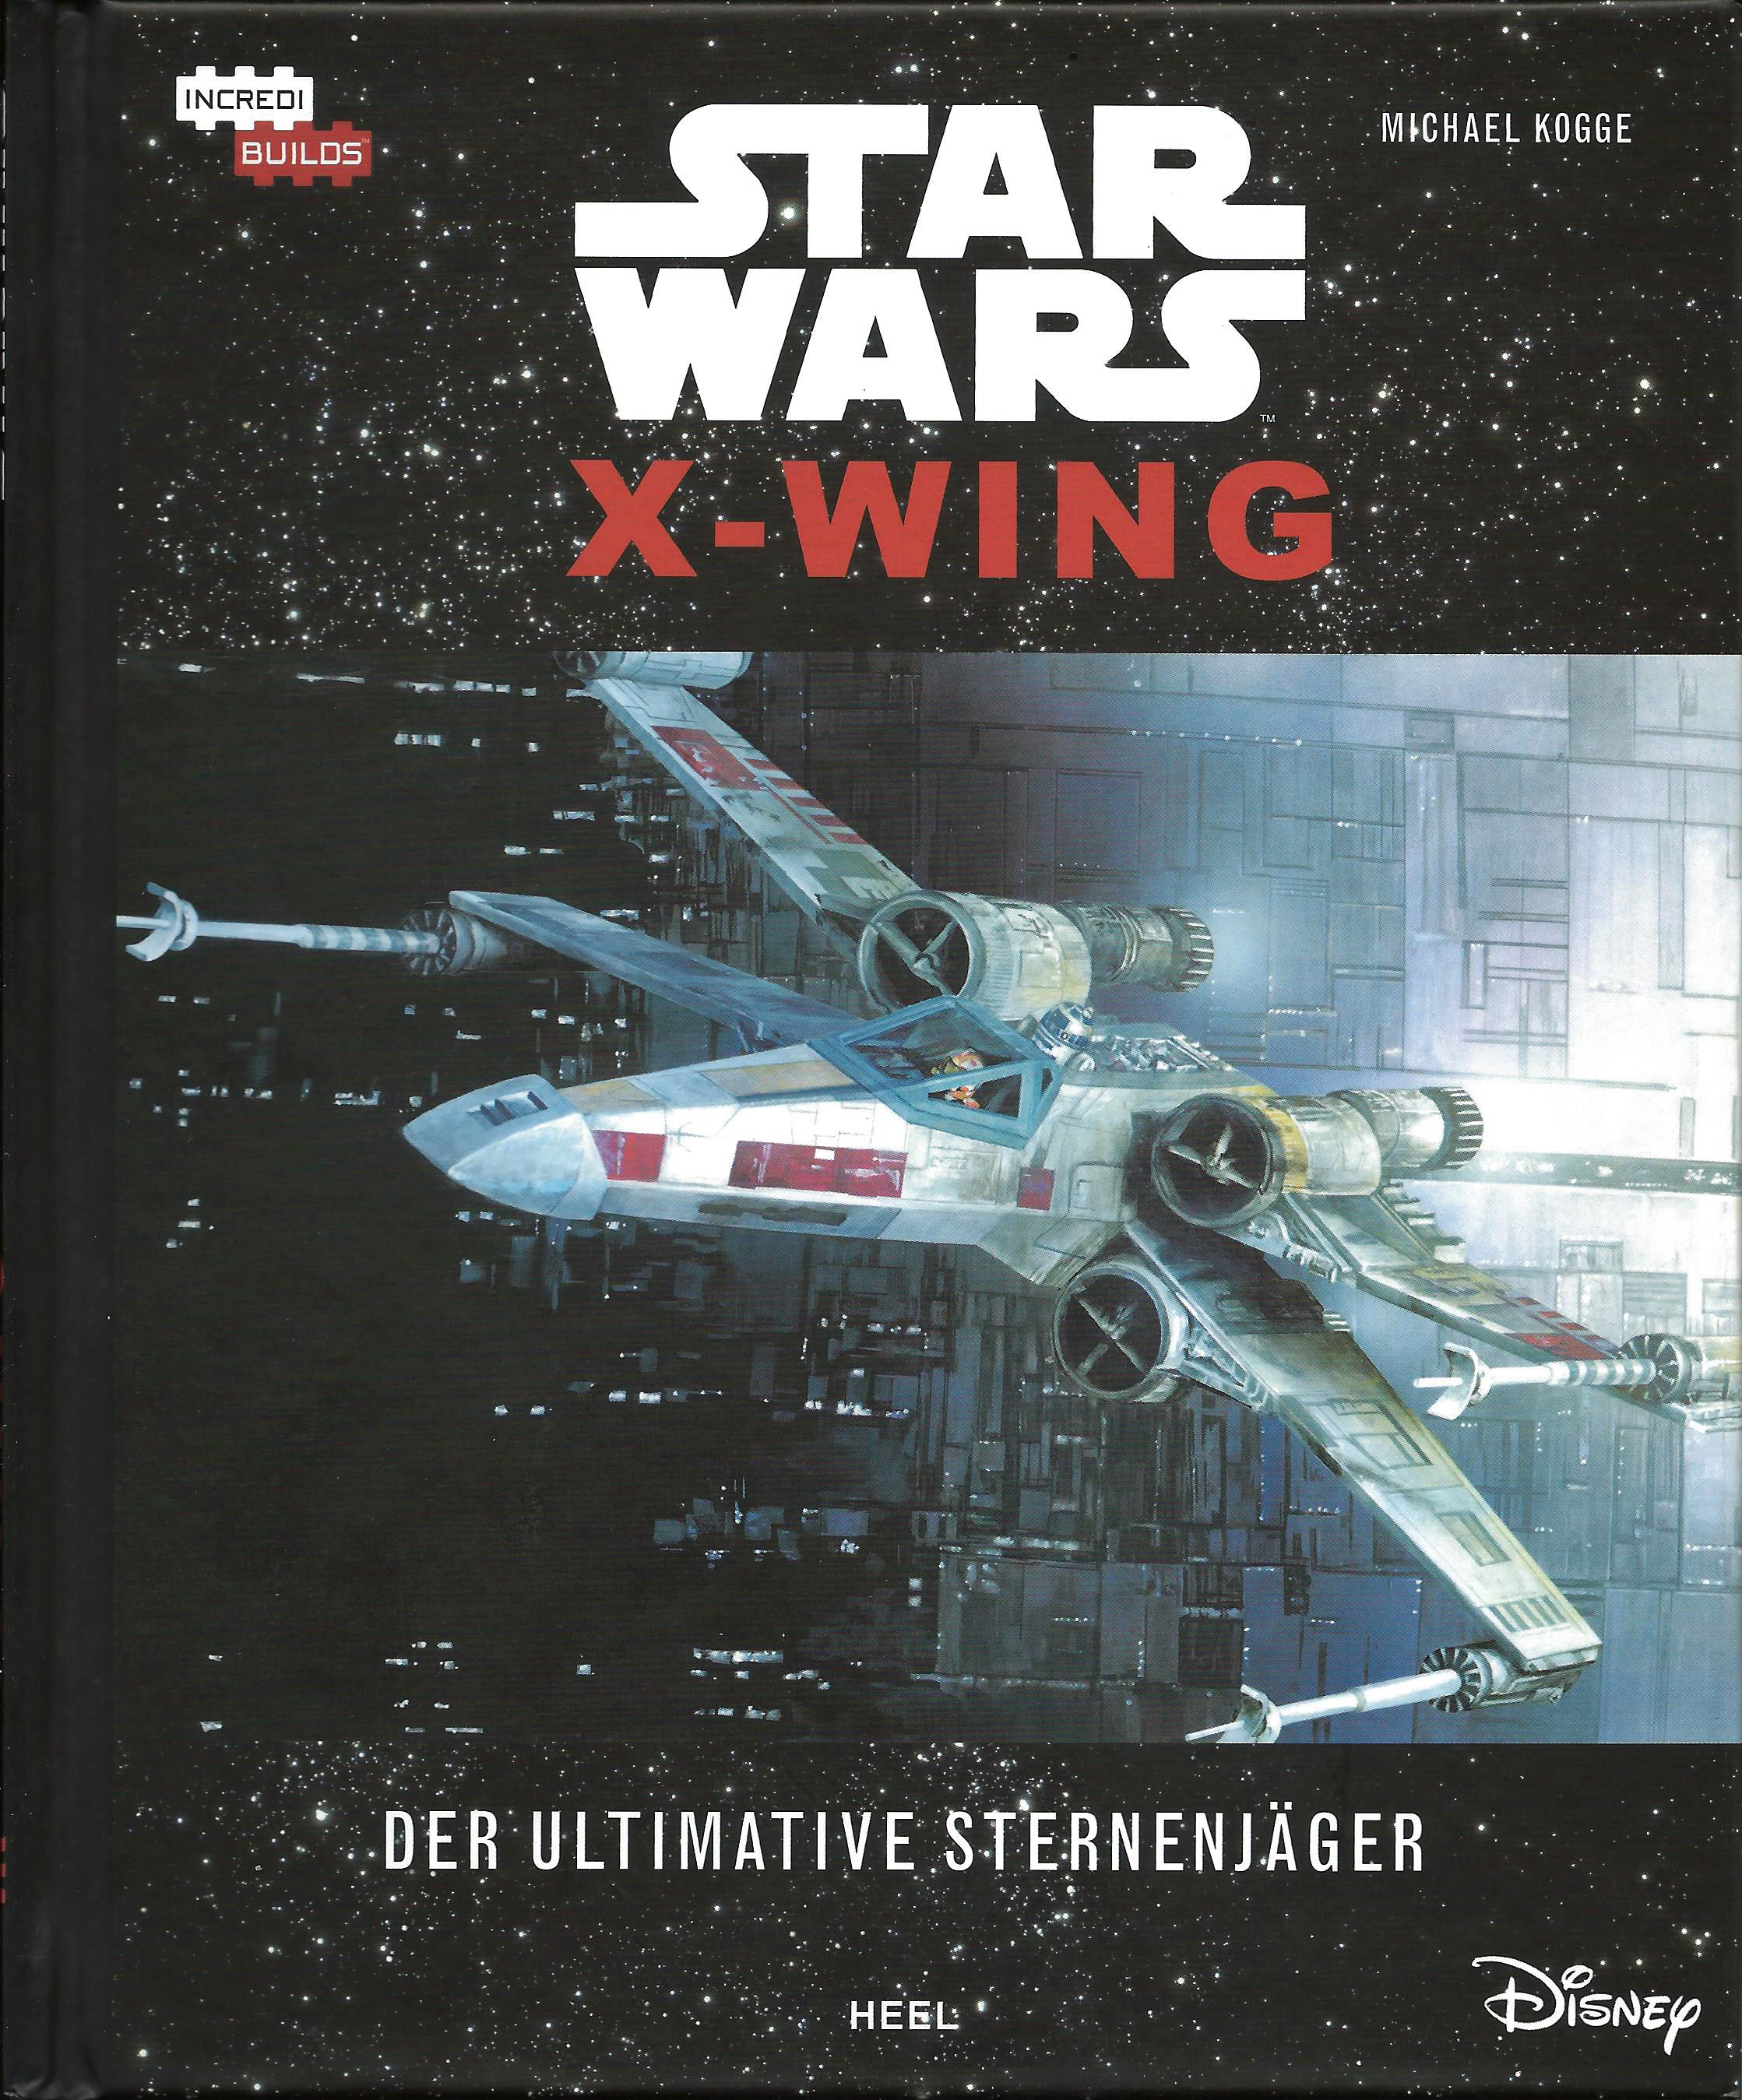 Incredibuilds: X-Wing: Der ultimative Sternjäger (30.06.2017)